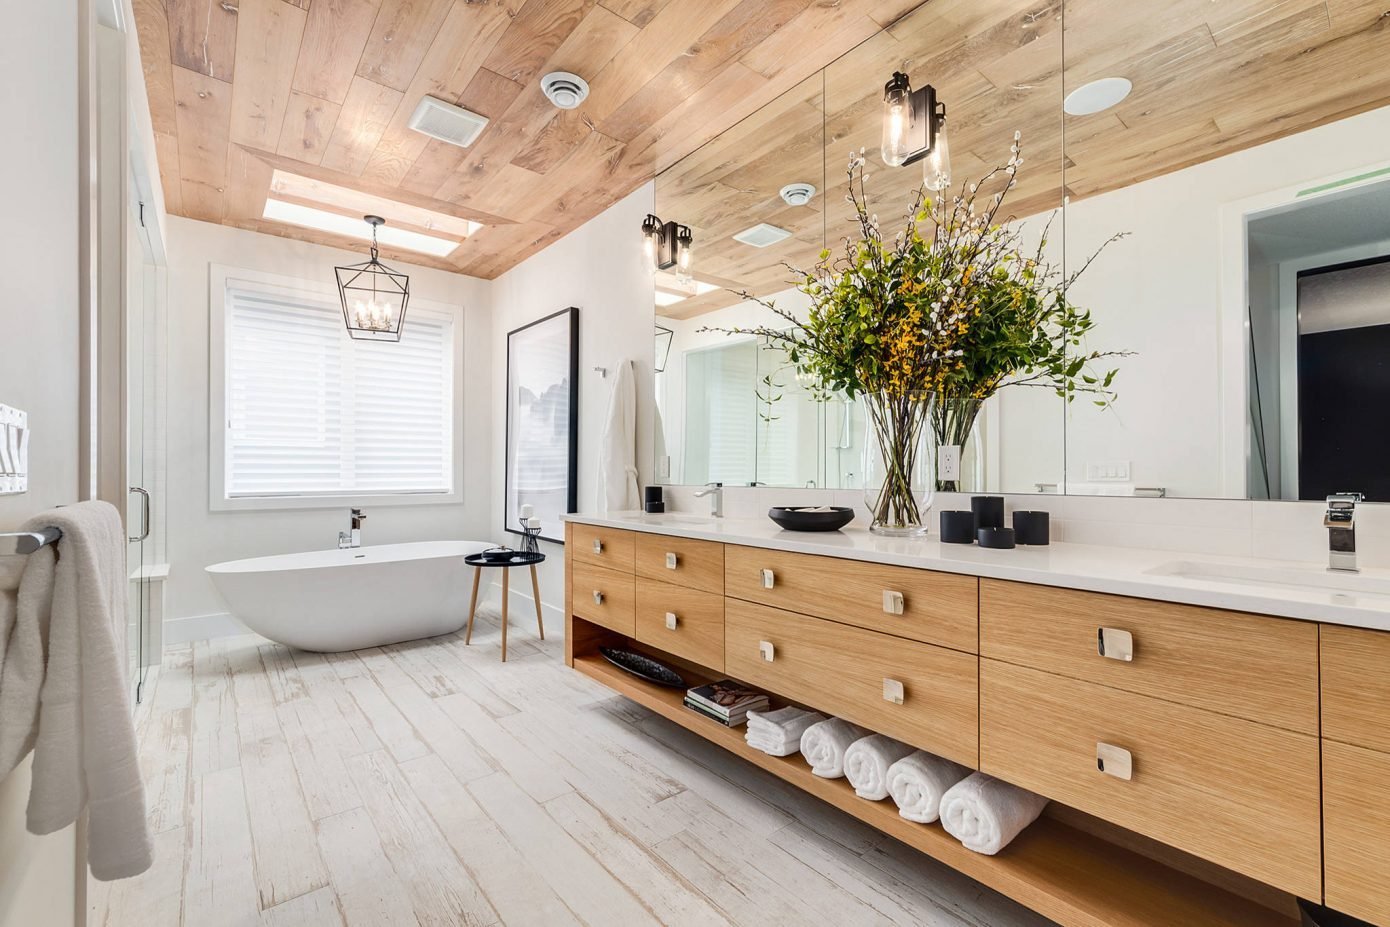 Ванная комната в деревянном доме: пол, стены, потолок + фото